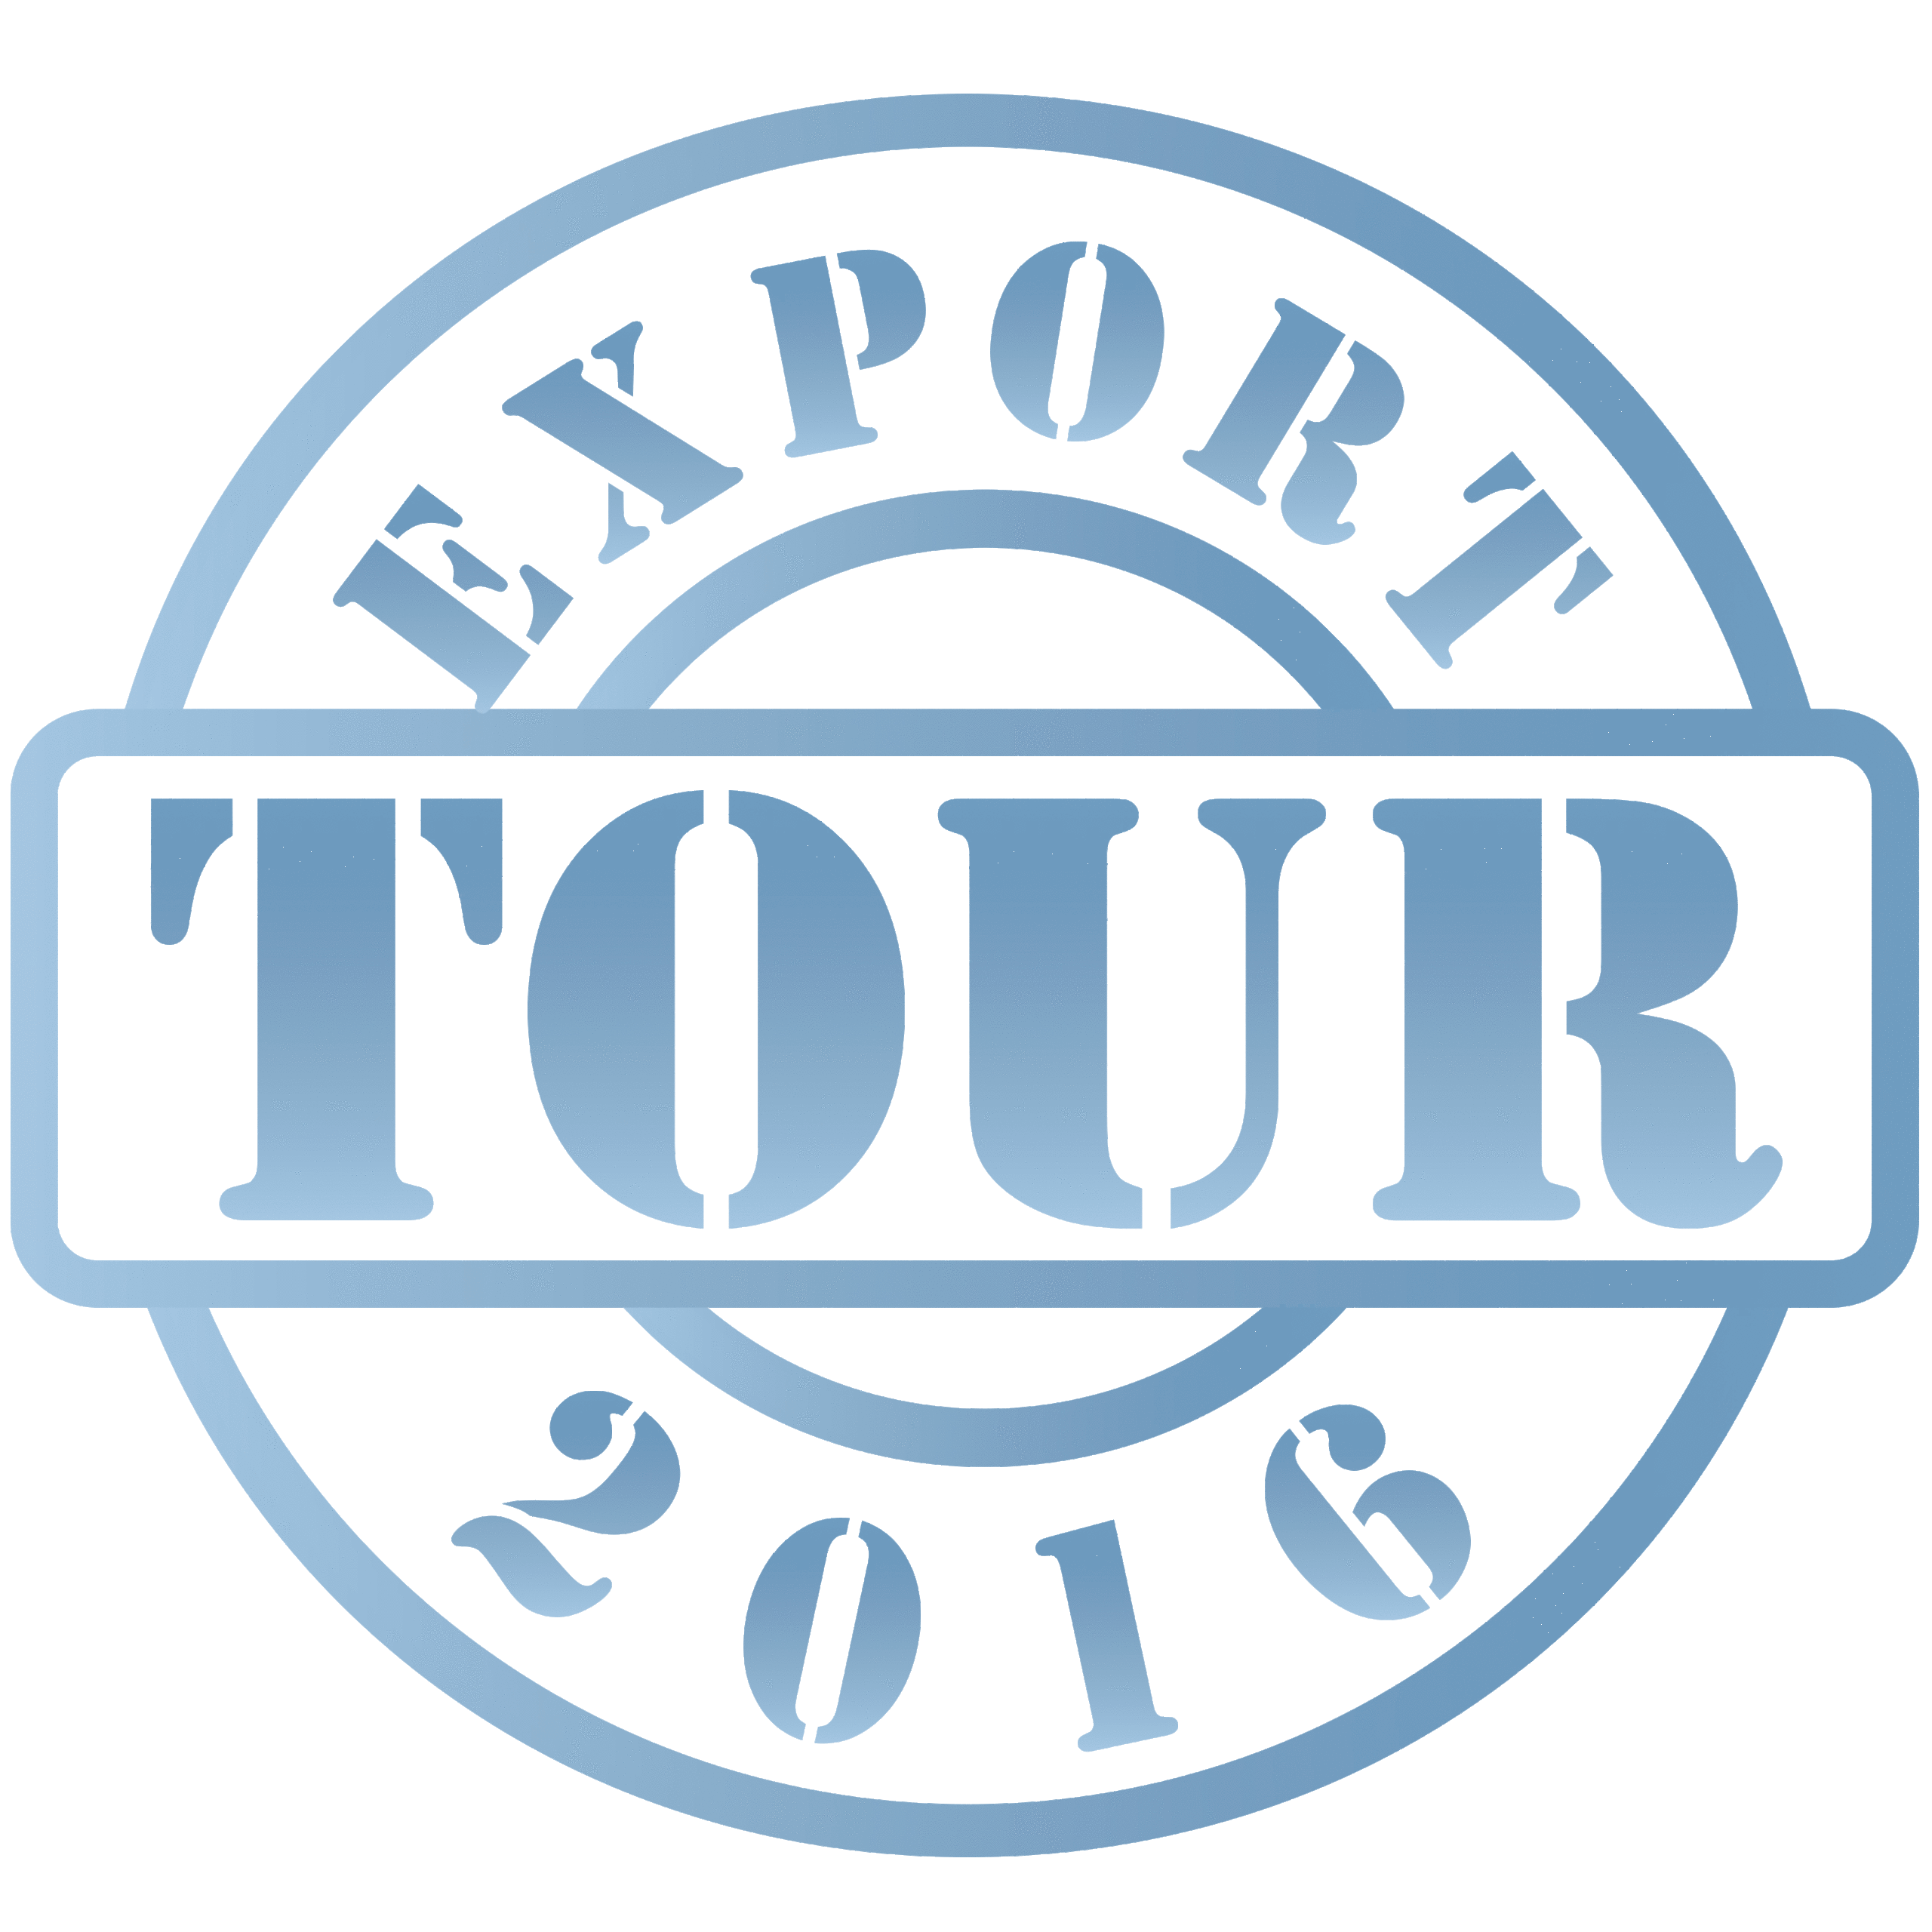 Export Tour 2016